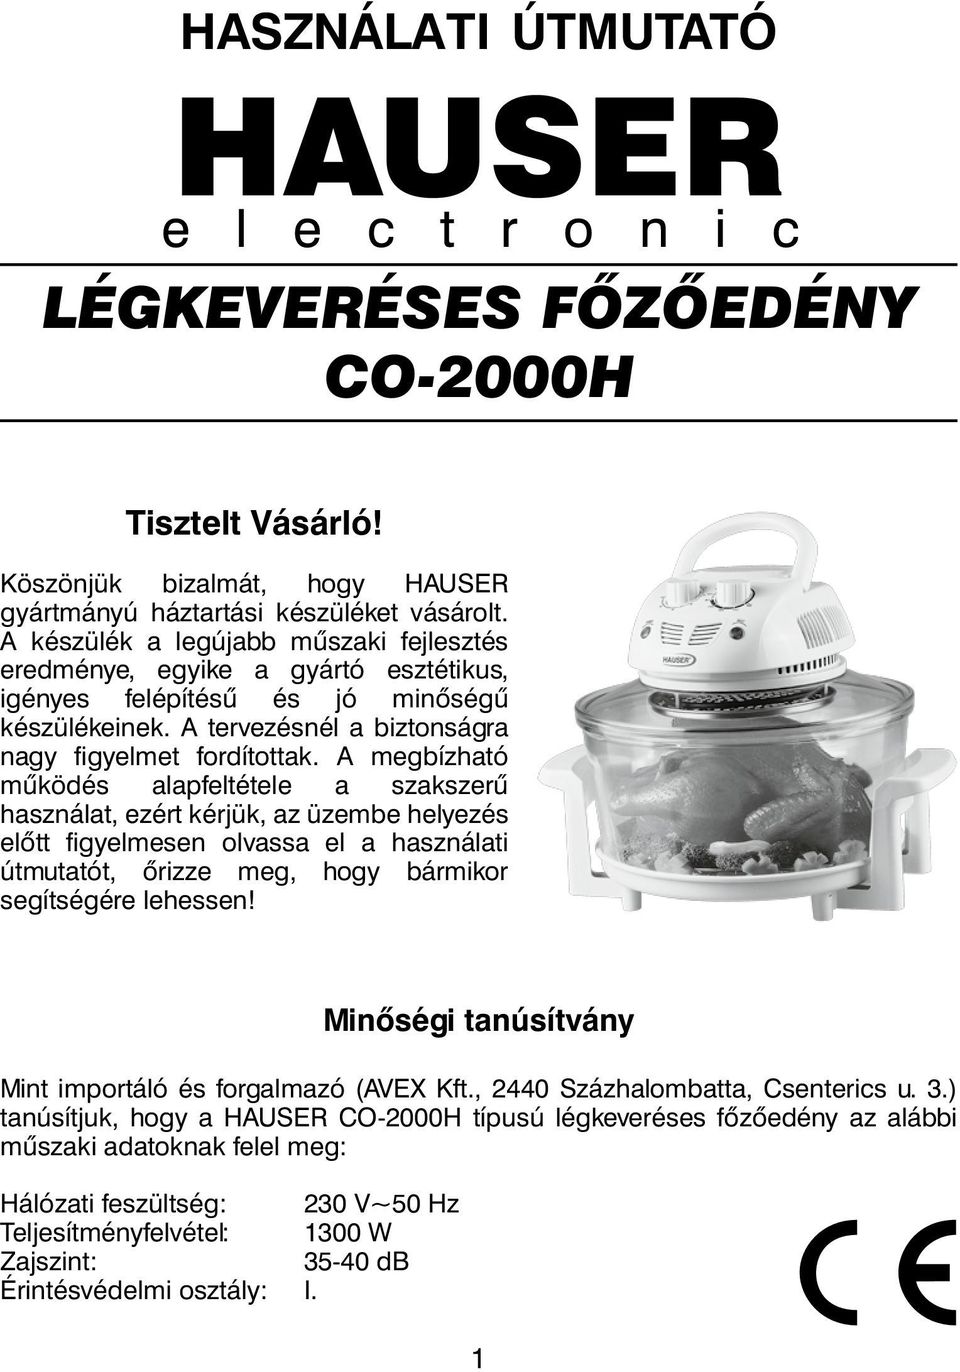 HAUSER LÉGKEVERÉSES FŐZŐEDÉNY CO-2000H - PDF Free Download